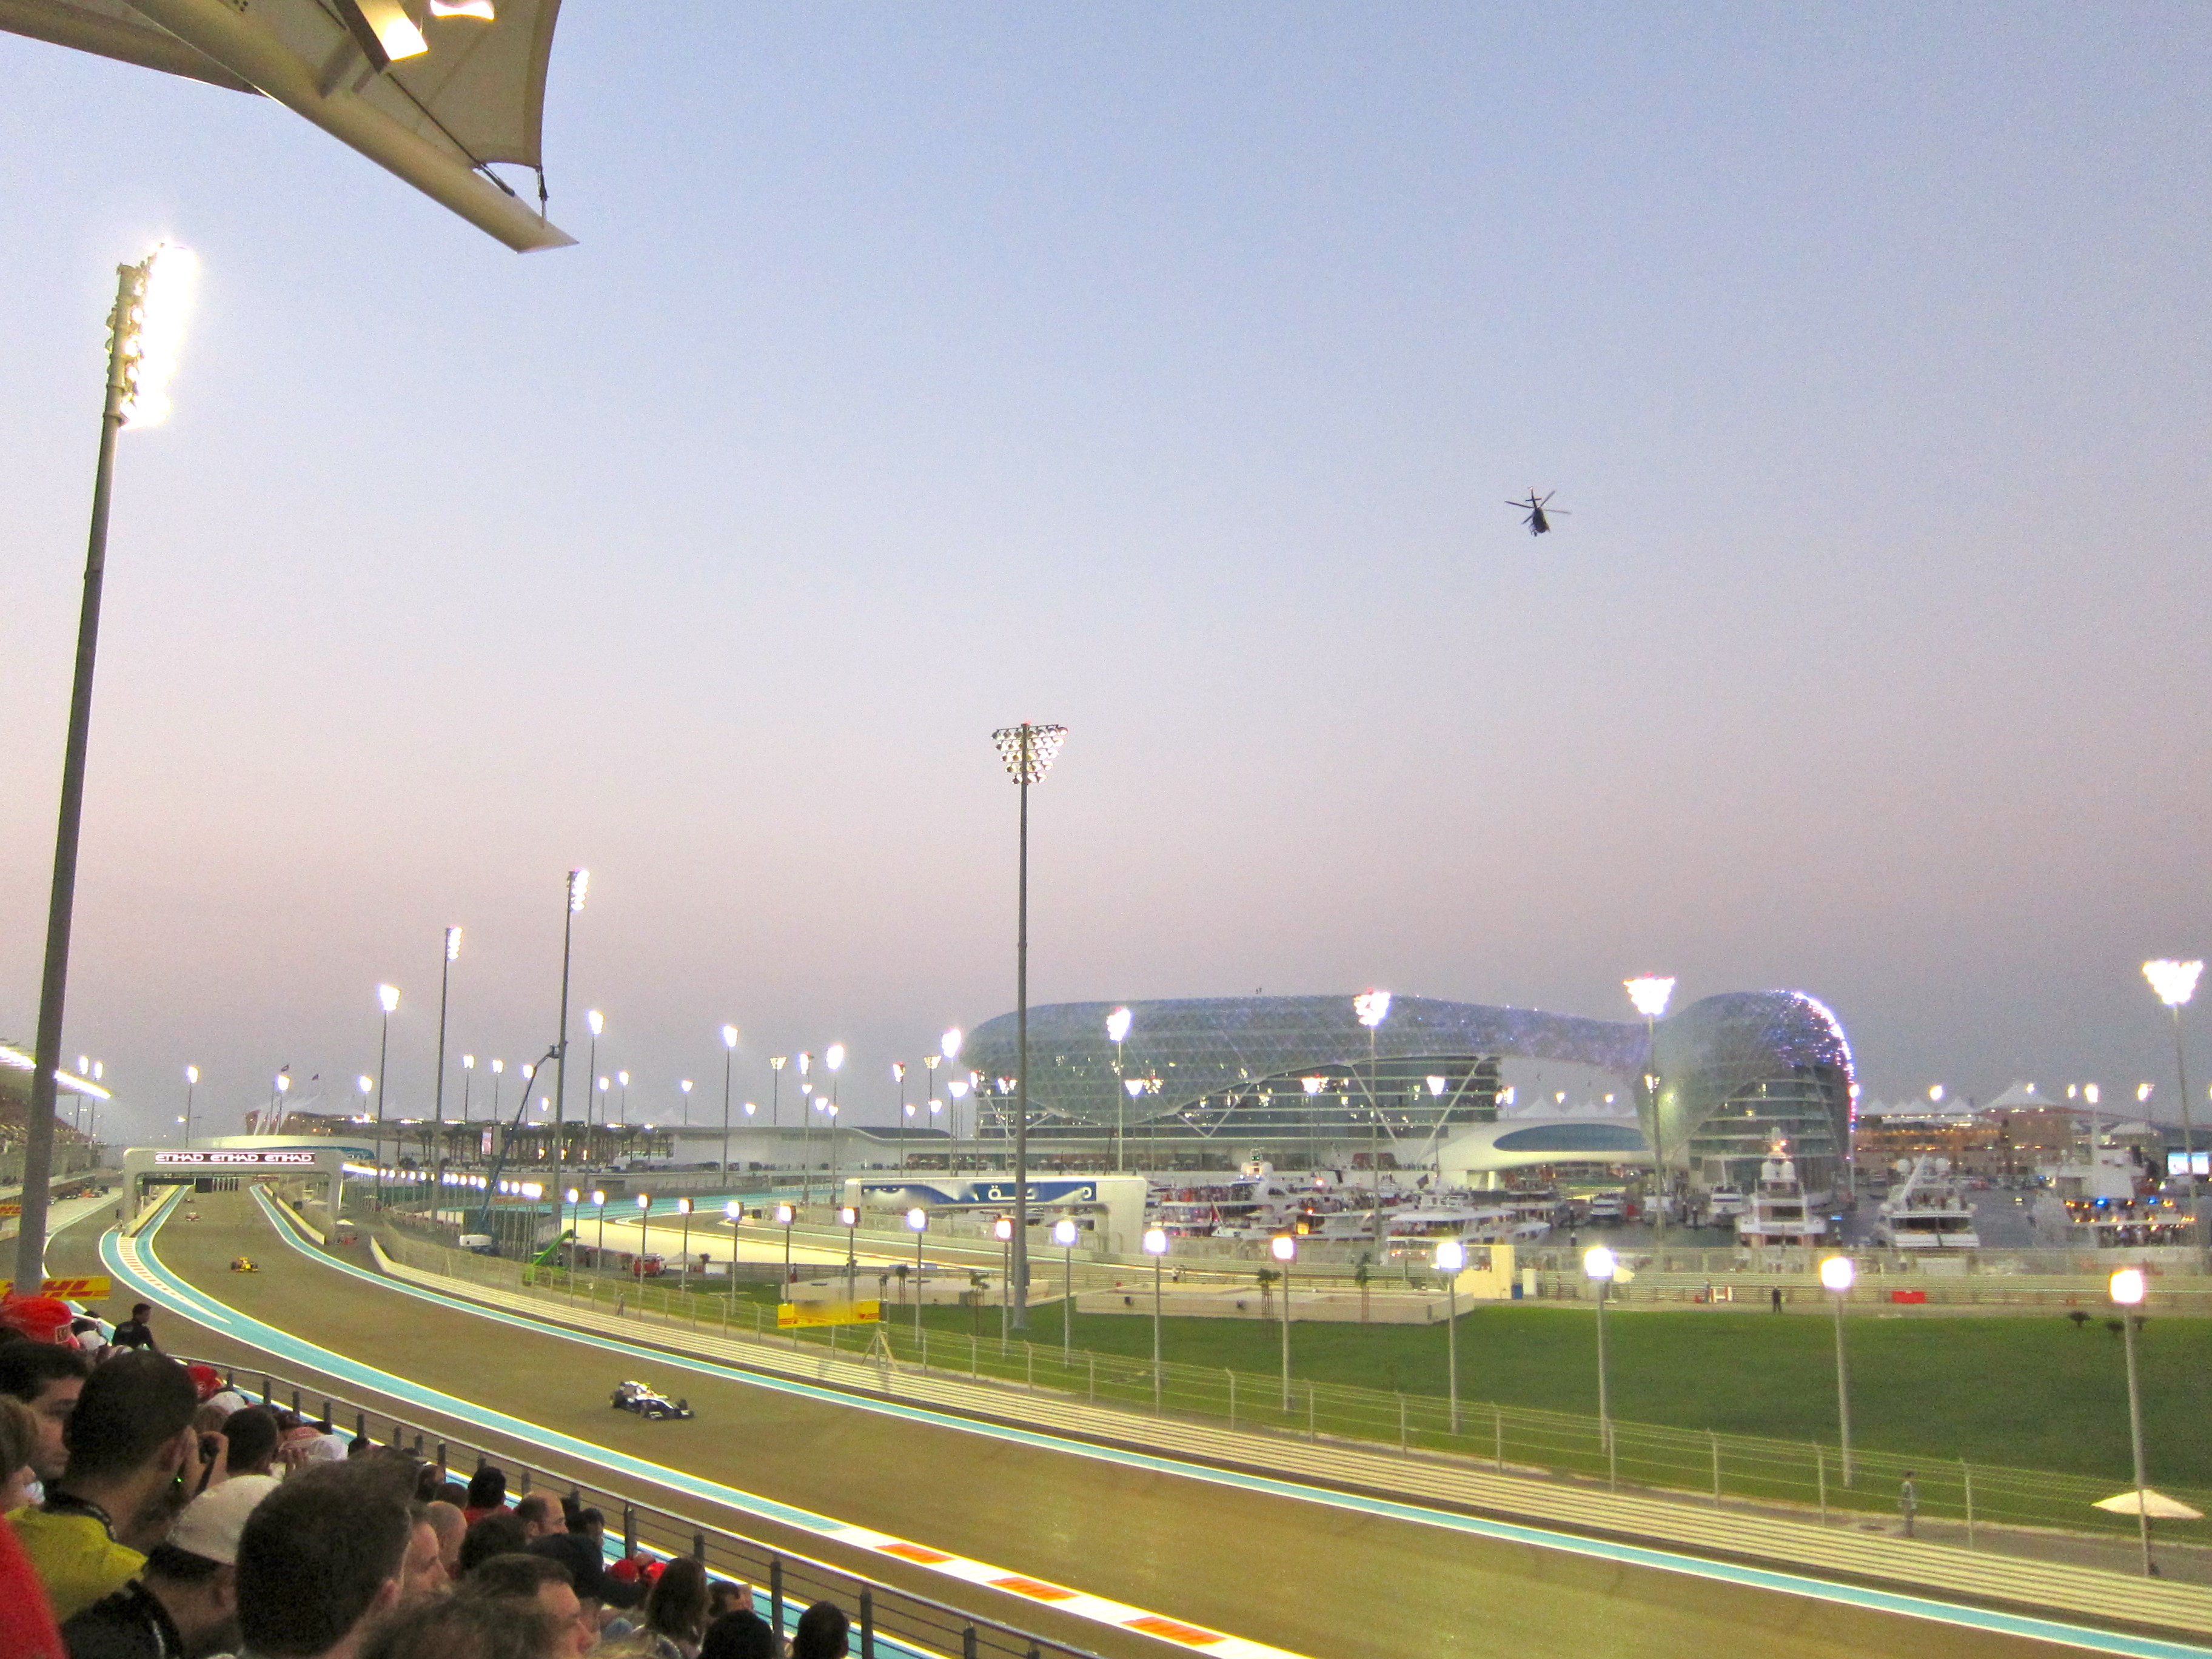 F1™ Grand Prix at Yas Marina Circuit in Abu Dhabi